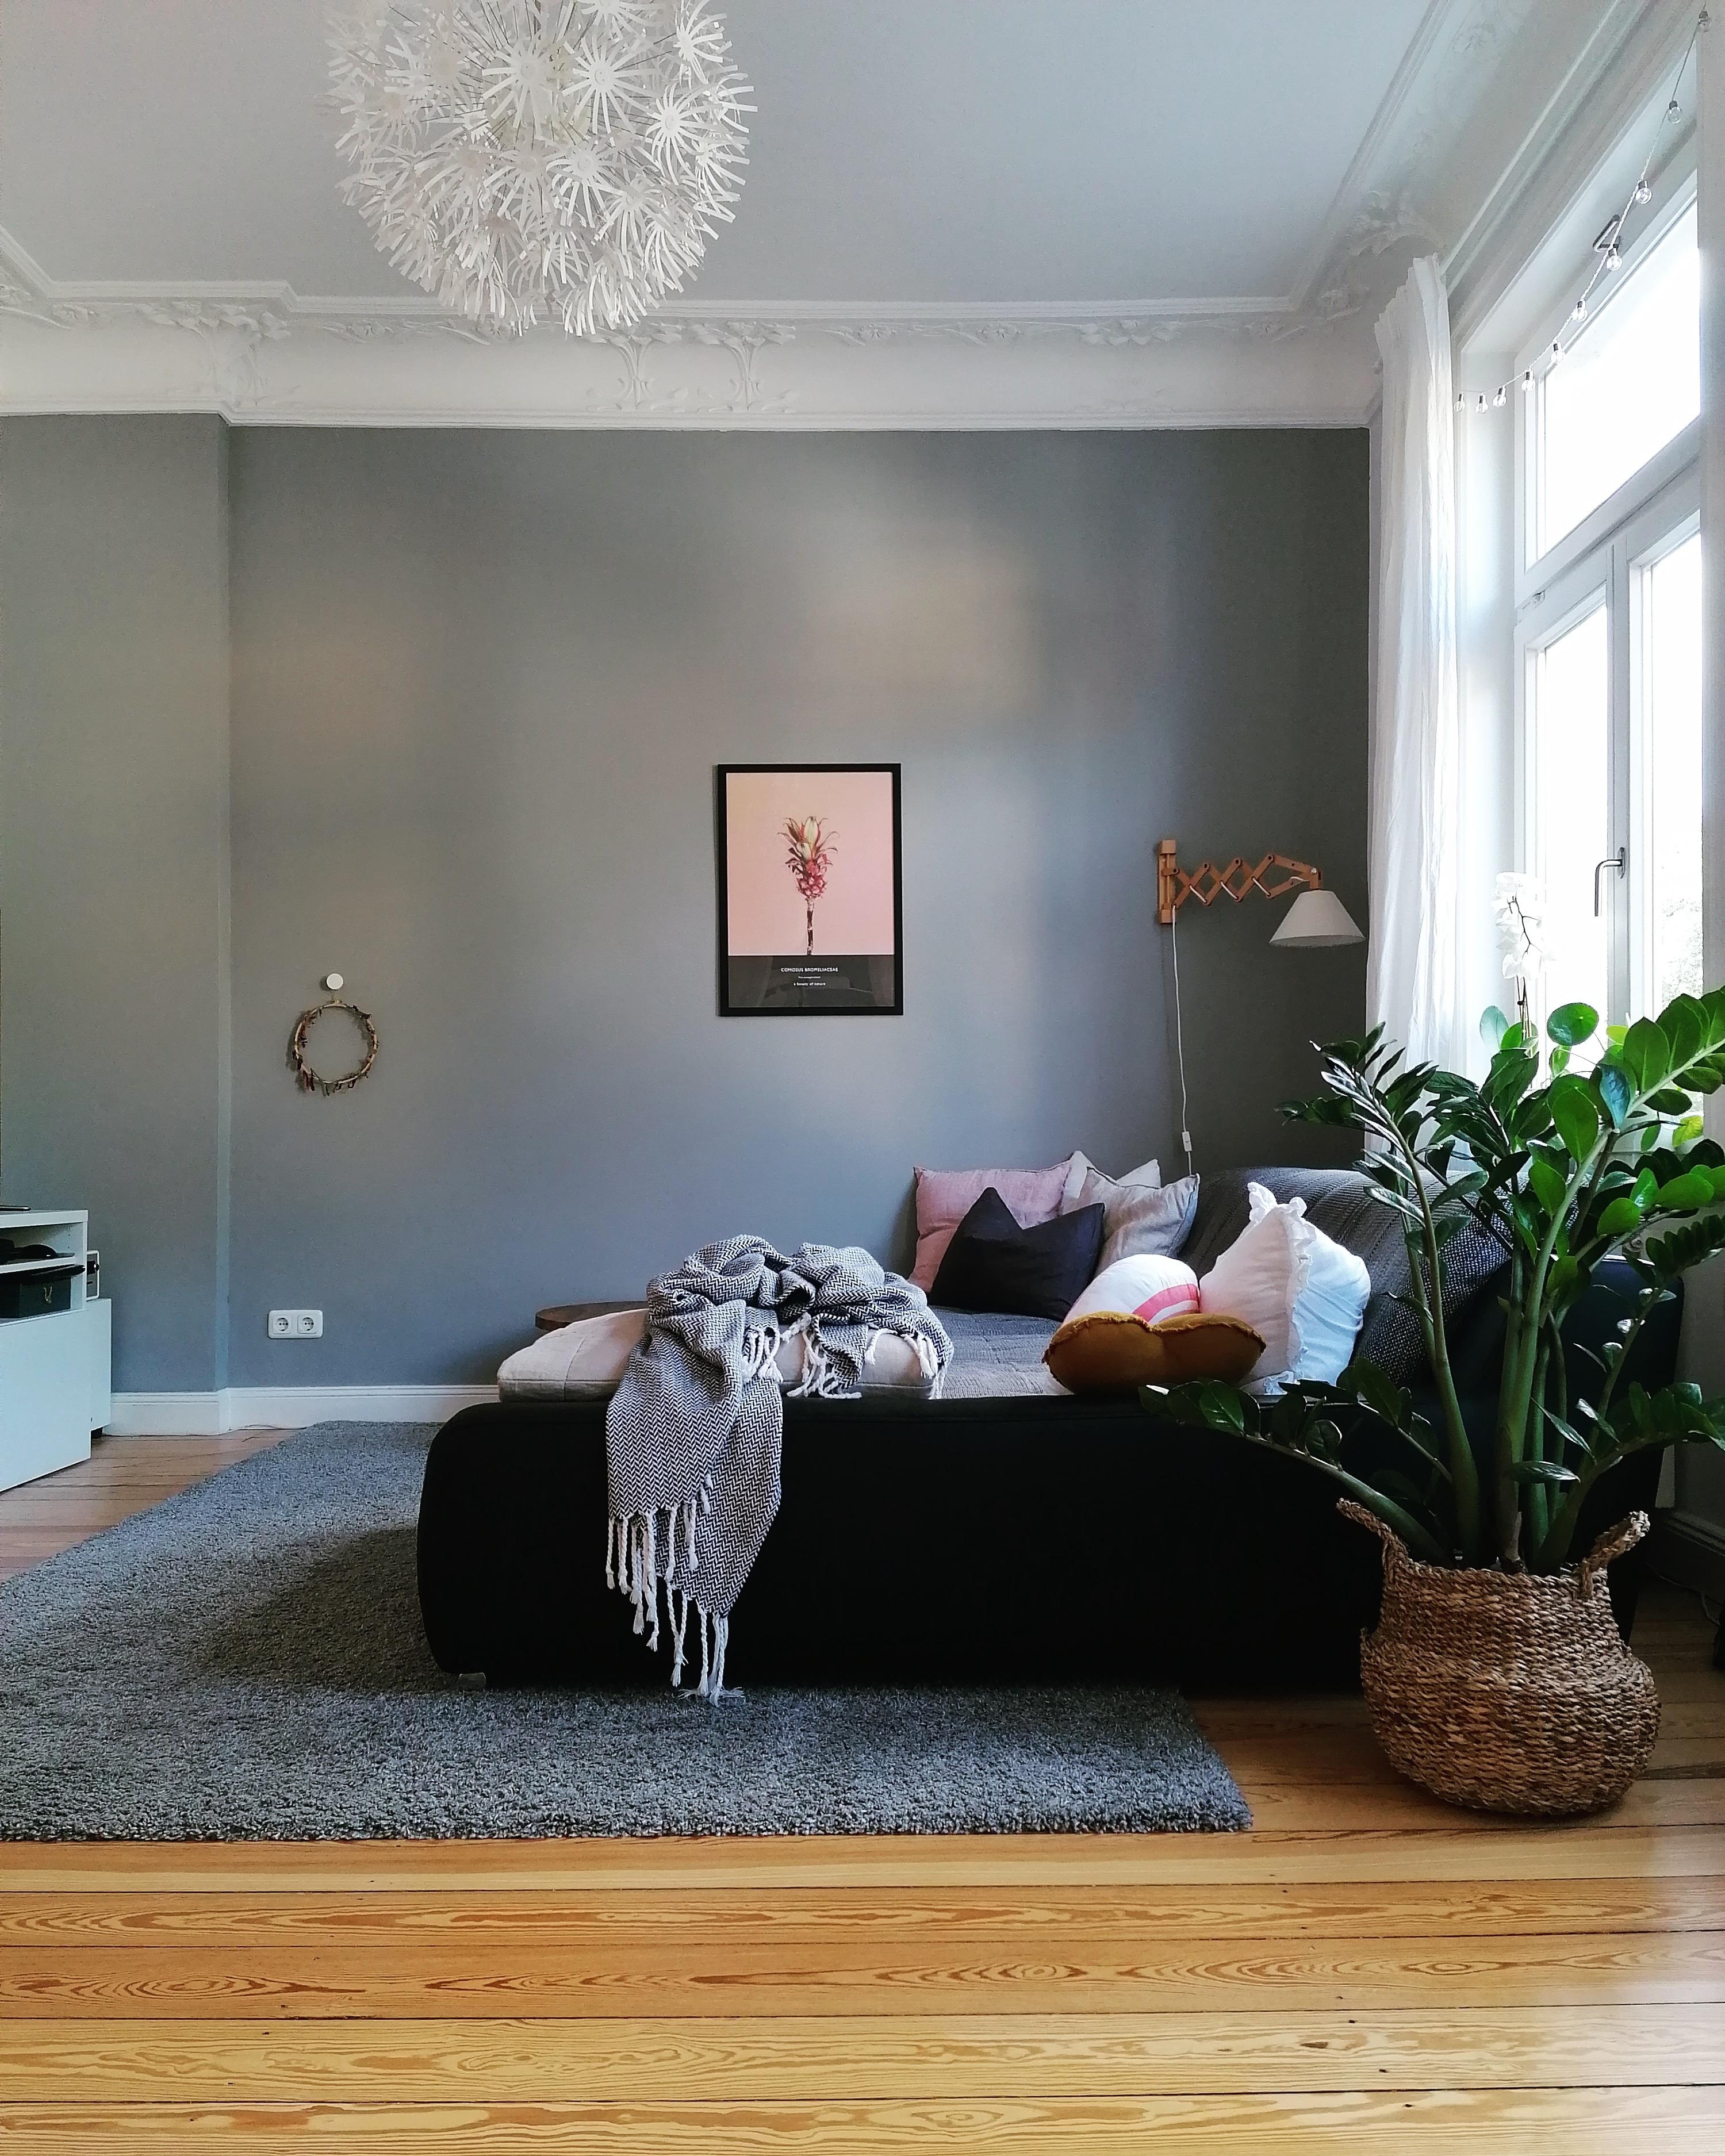 Weekend vibes #wohnzimmer #couch #bild #altbau #altbauliebe 